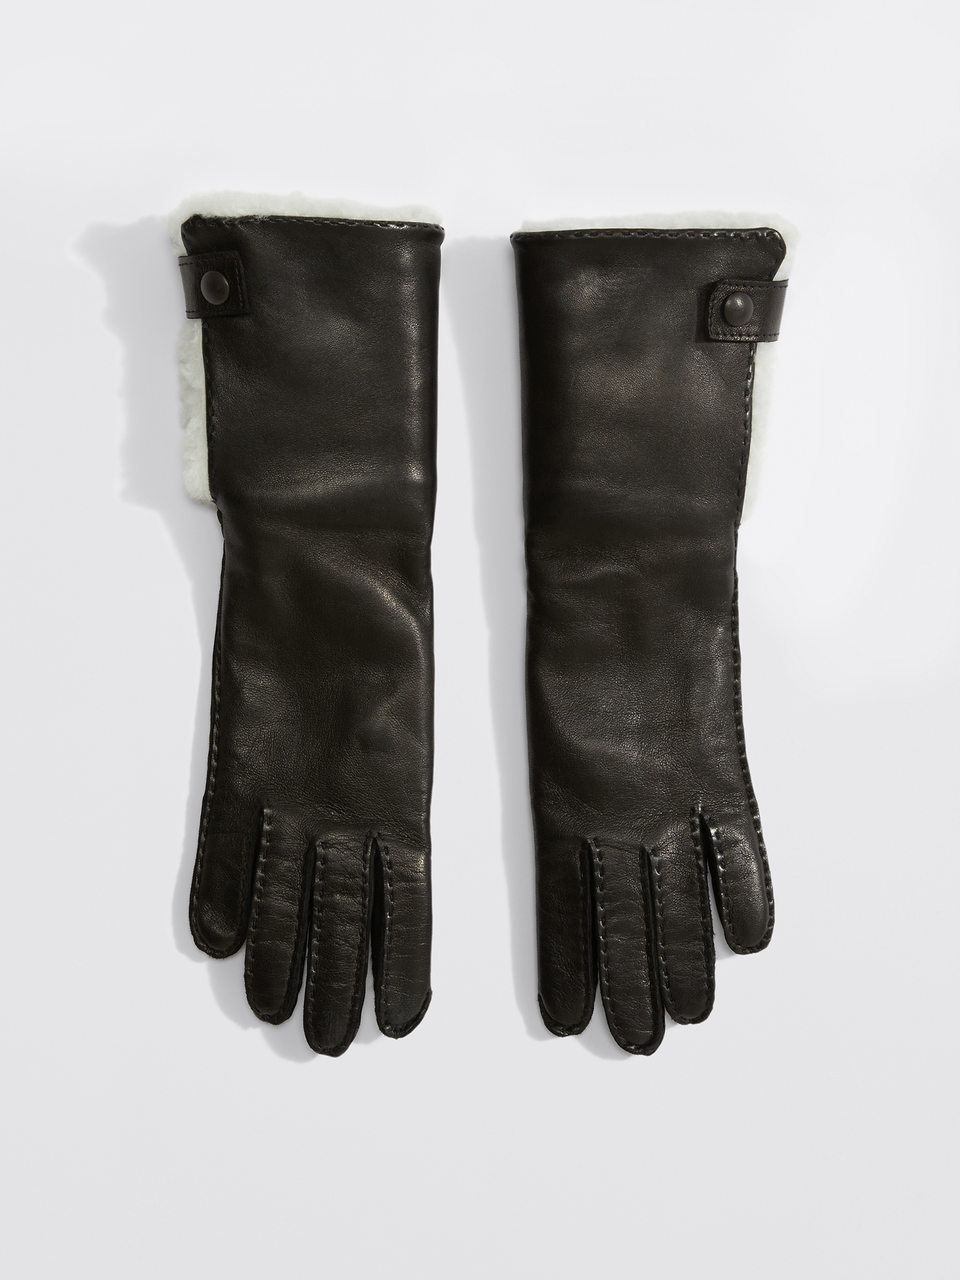 Kira Shearling Glove